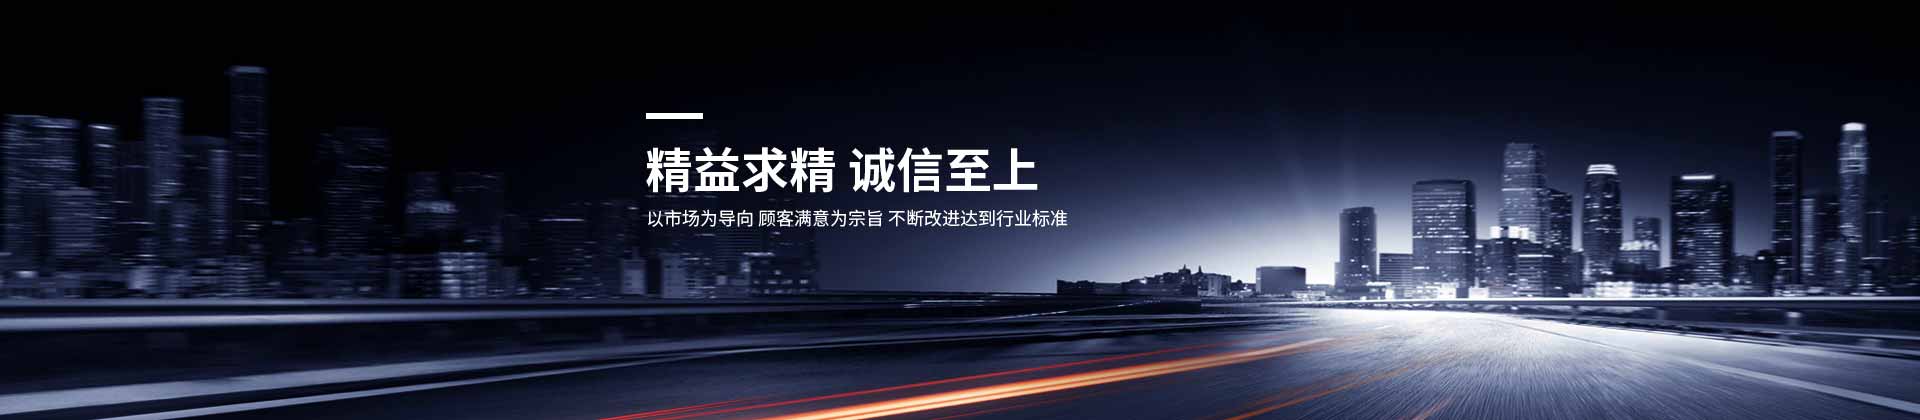 武汉安博·体育(中国)股份有限公司官网设计